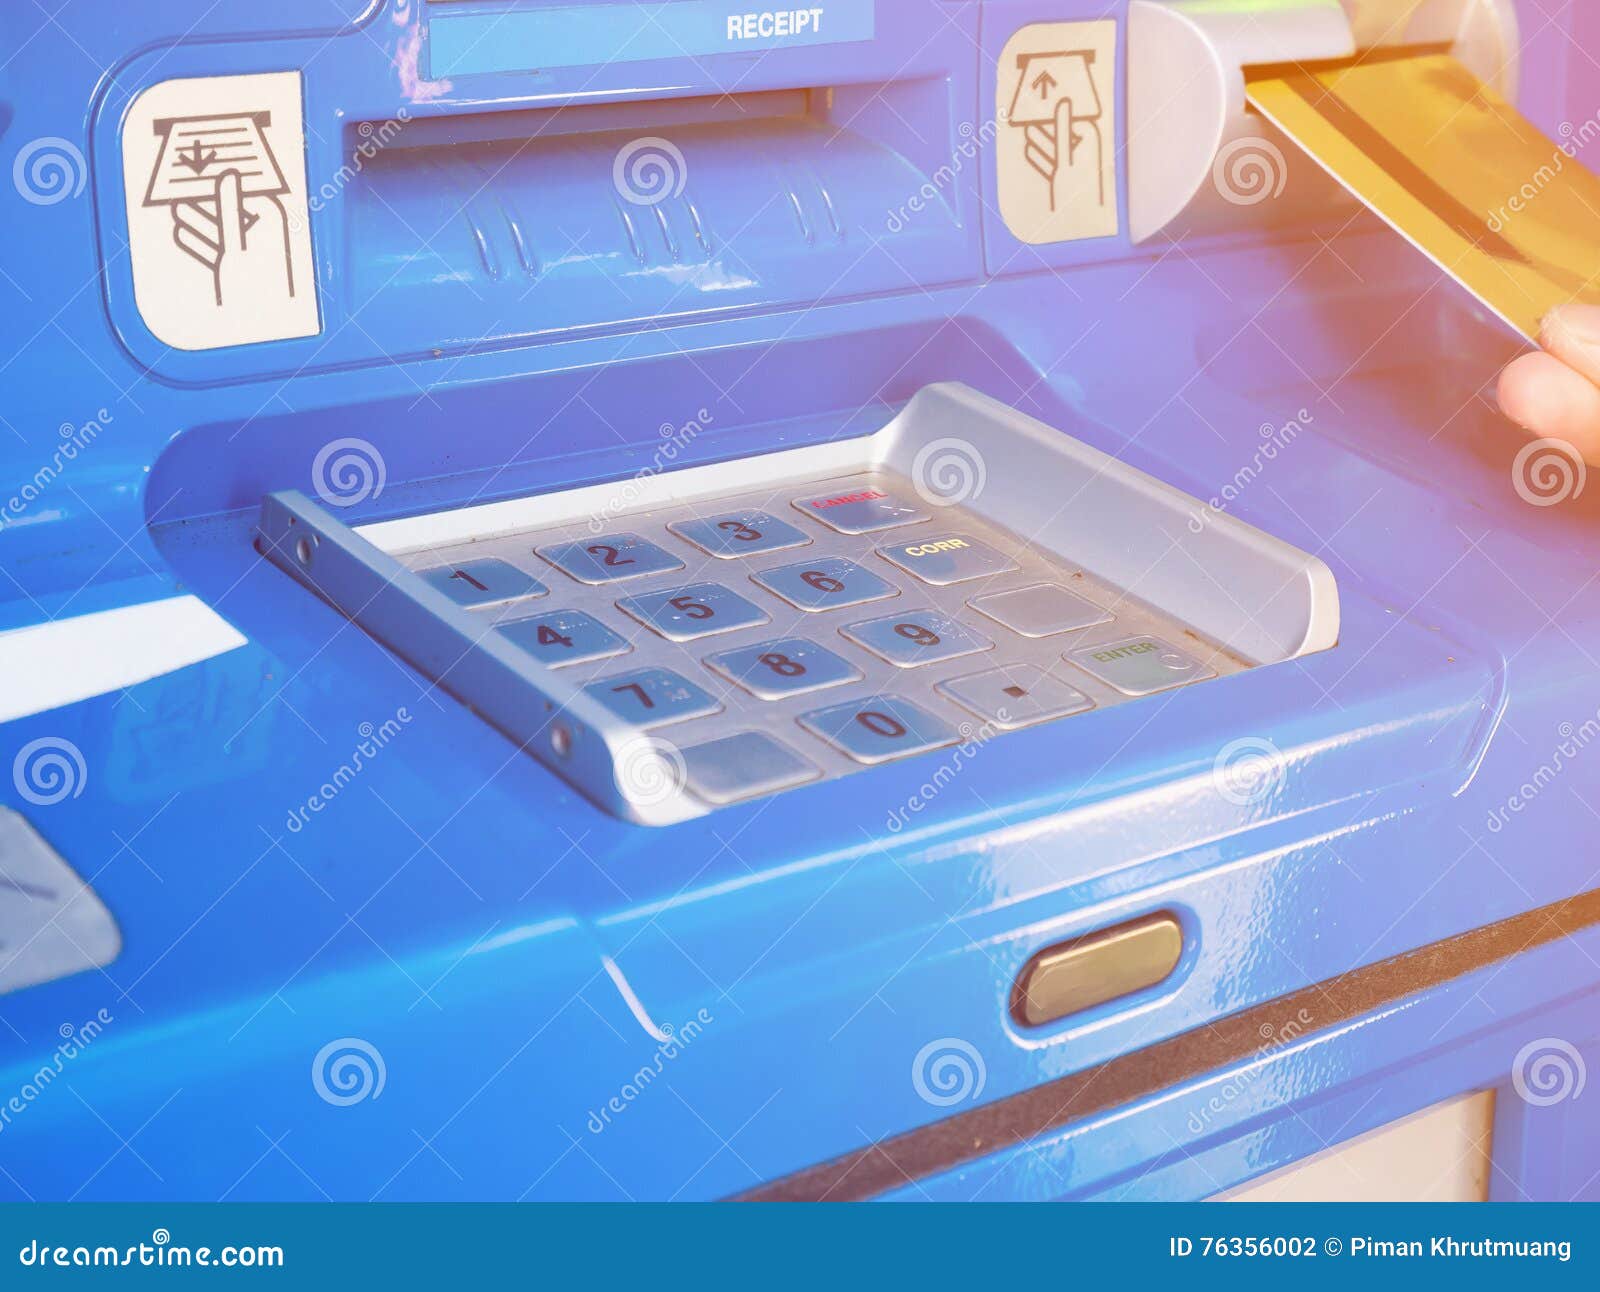 Weibliche Hand, Die ATM-Karte In ATM-Bankmaschine Einfügt Stockfoto